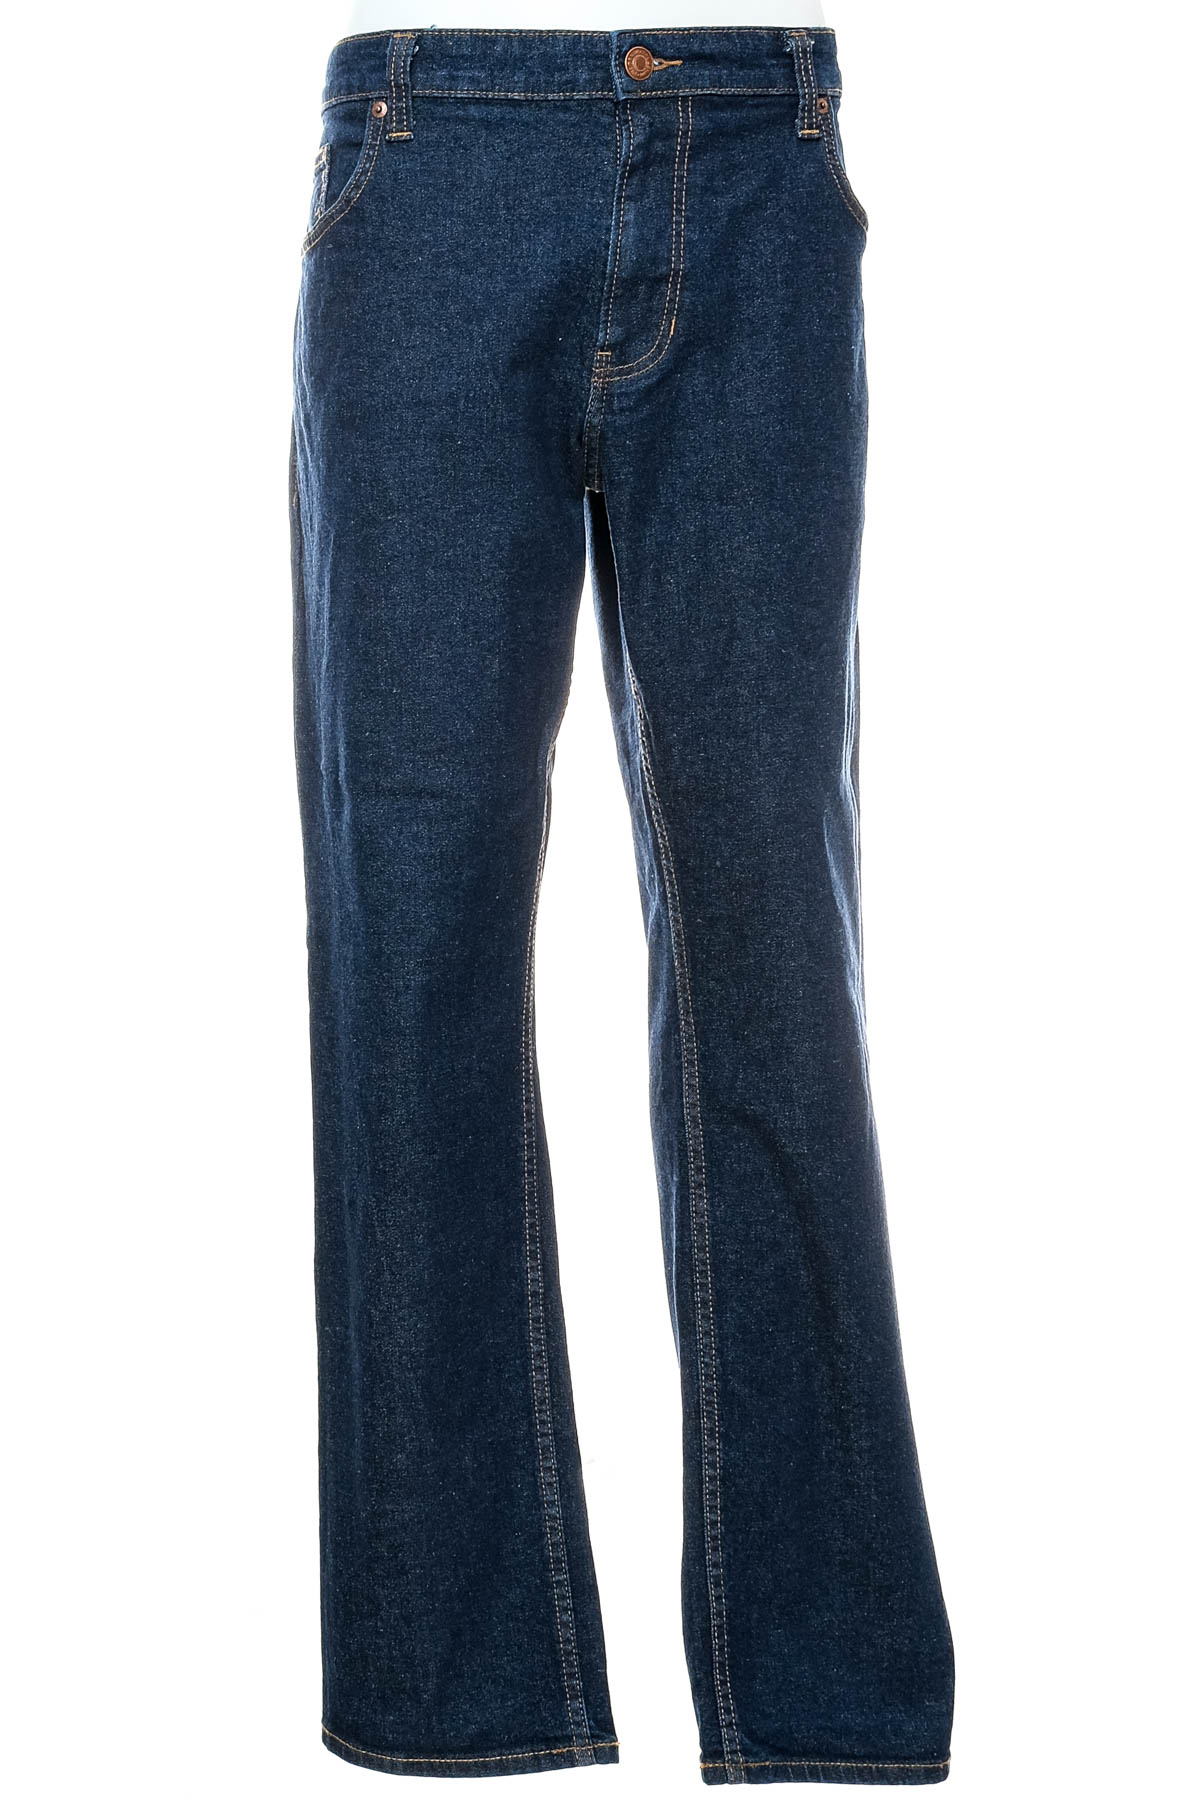 Jeans pentru bărbăți - C&A - 0